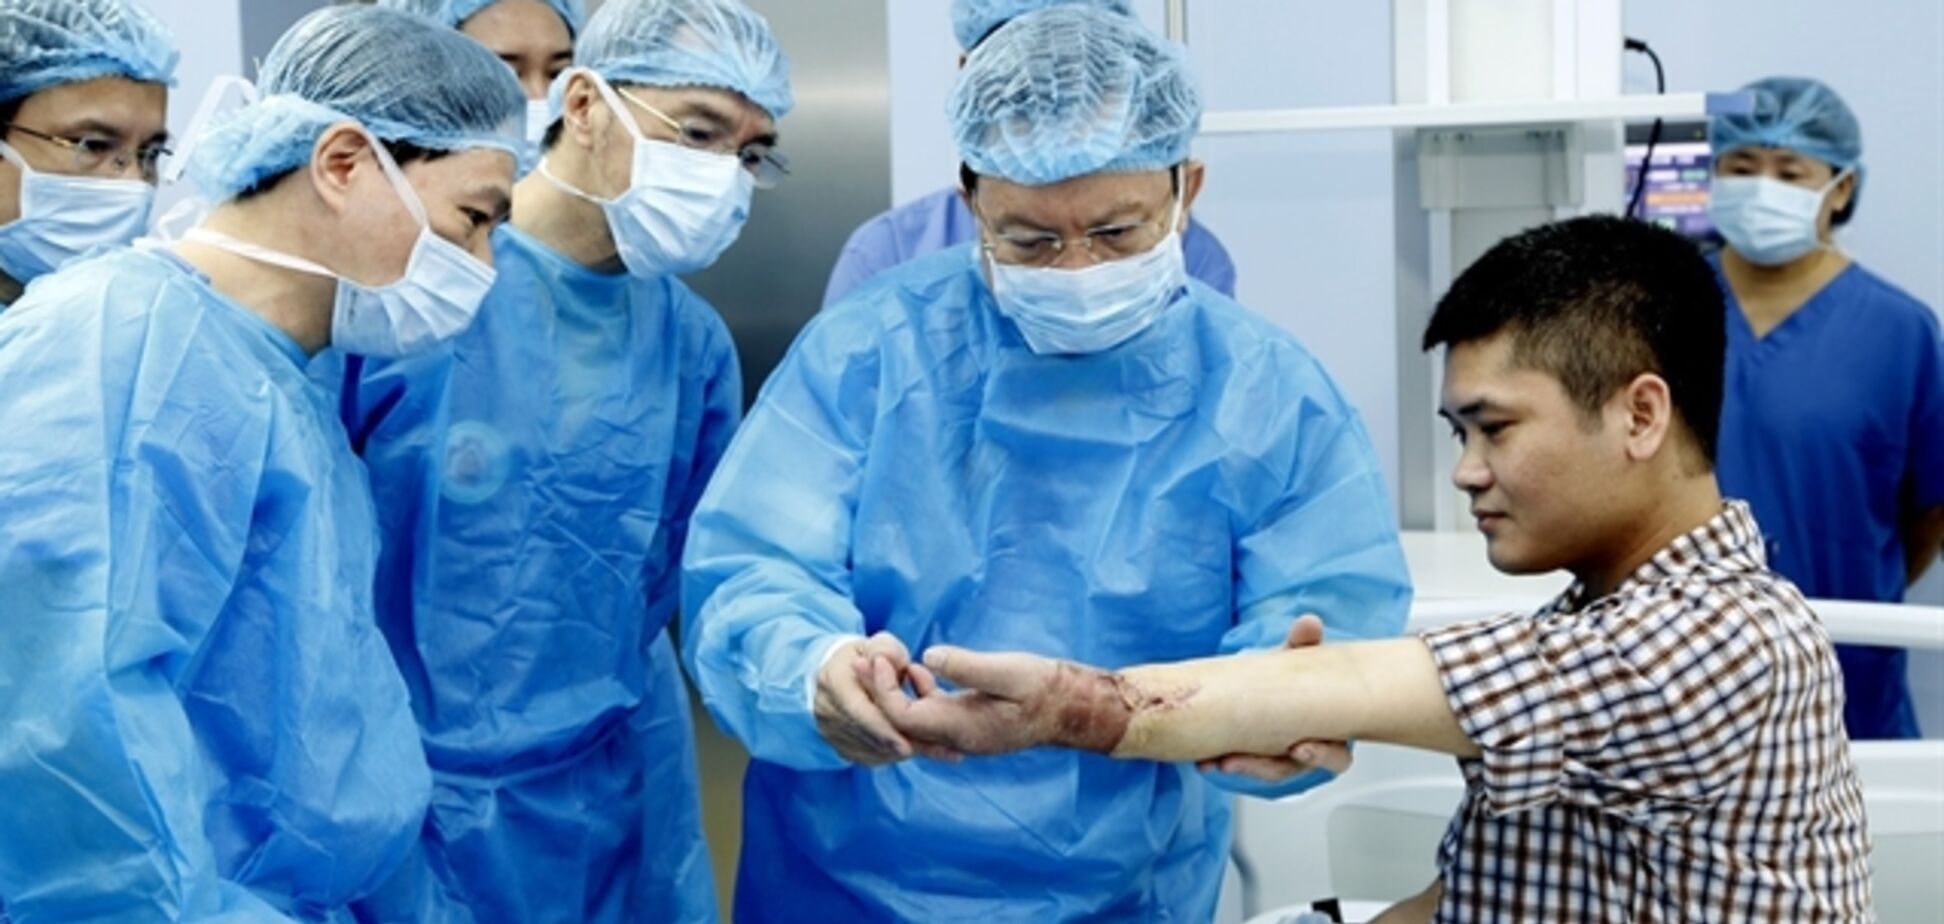 Медики вперше в історії пересадили людині руку від живого донора. Фото